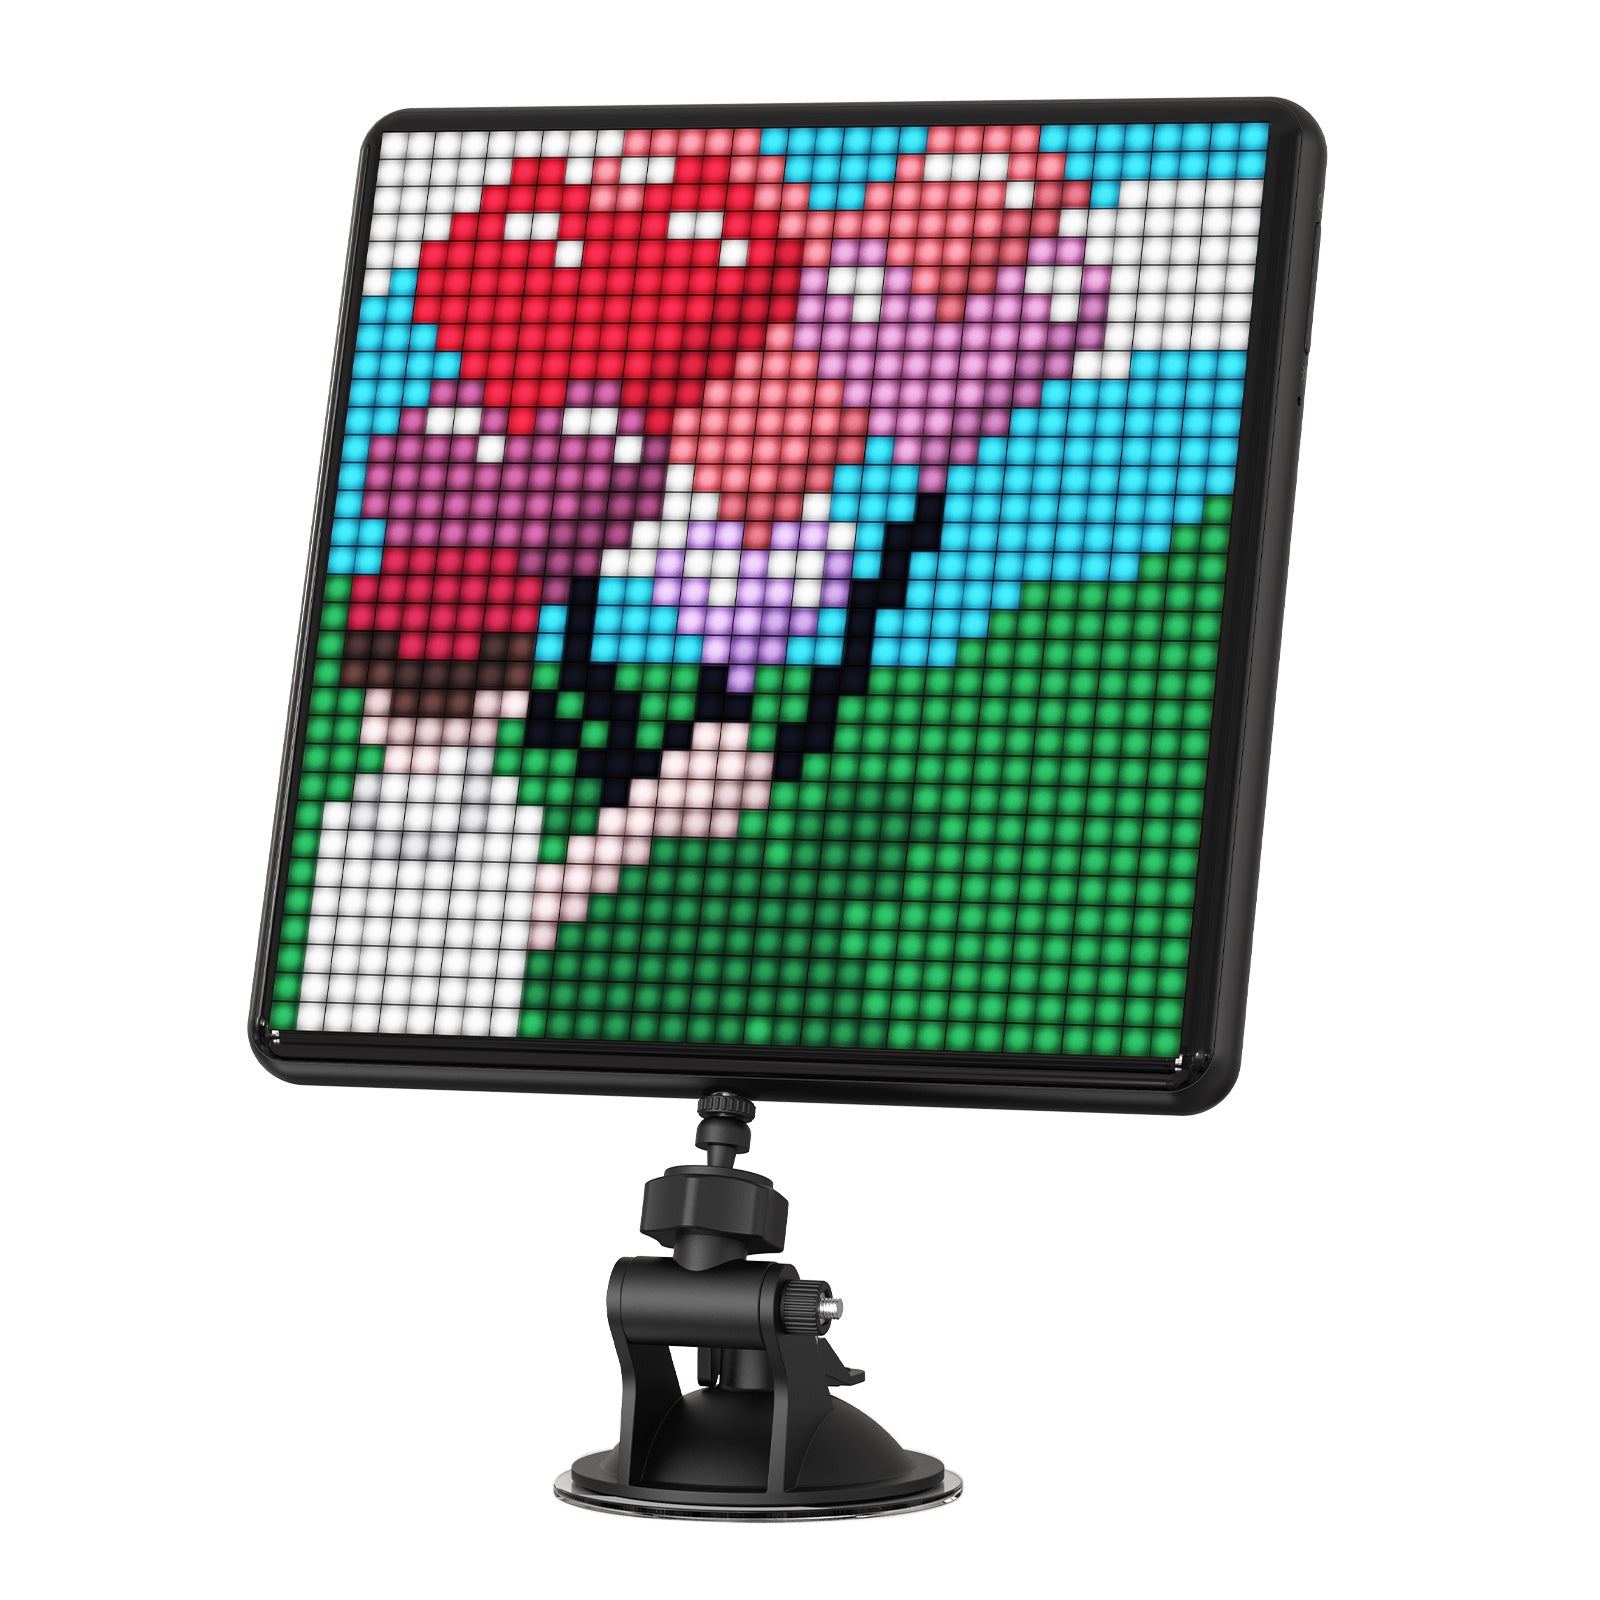 Divoom Pixoo-Max|Pixelanzeige| 32 x 32 programmierbarer LED-Bildschirm